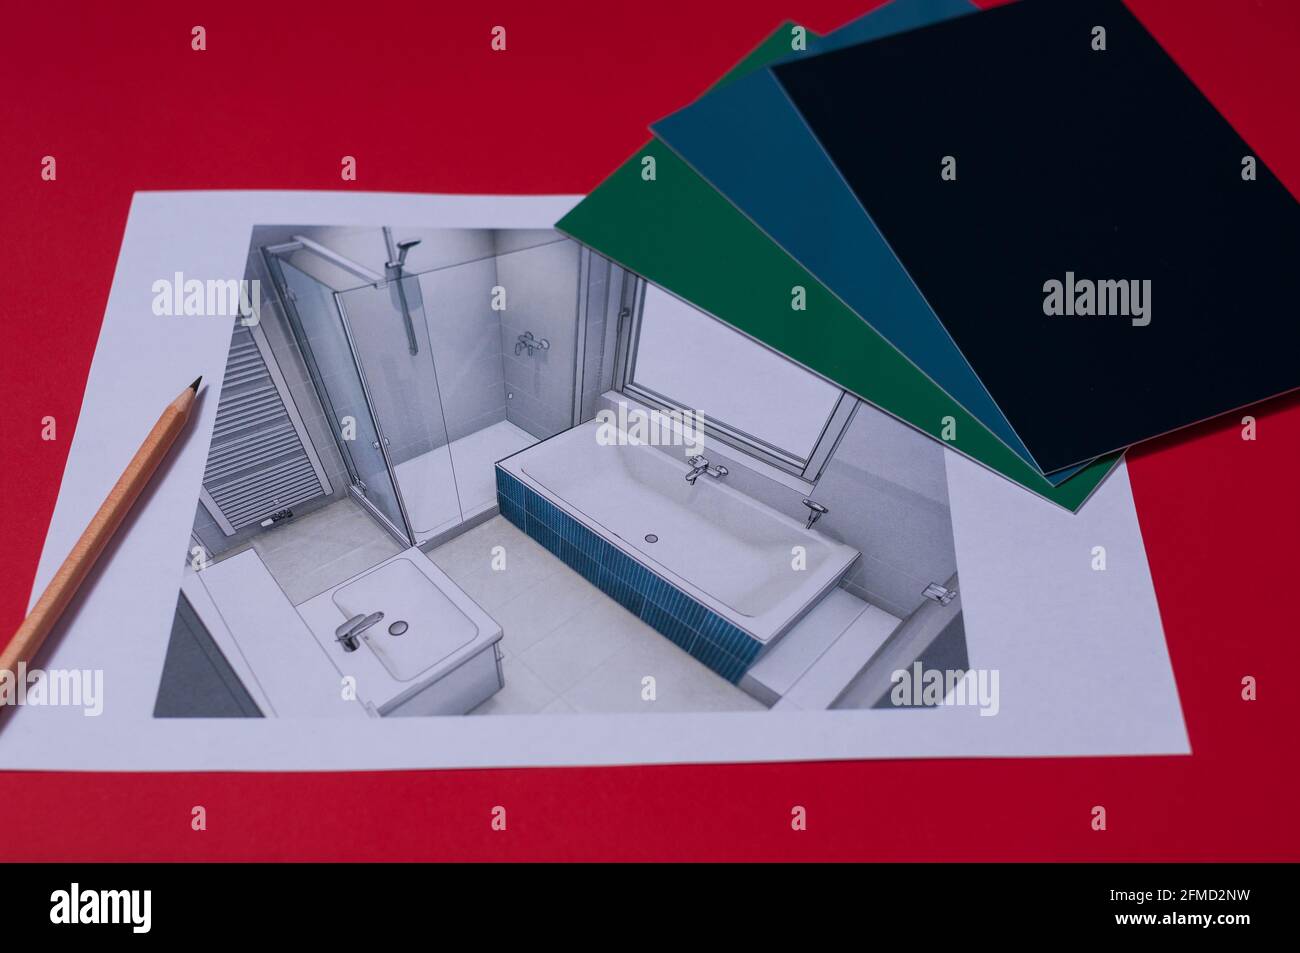 Blick auf den Entwurf des Badezimmers mit Badewanne und Dusche. Es gibt verschiedene Farbmuster auf dem Plan Stockfoto